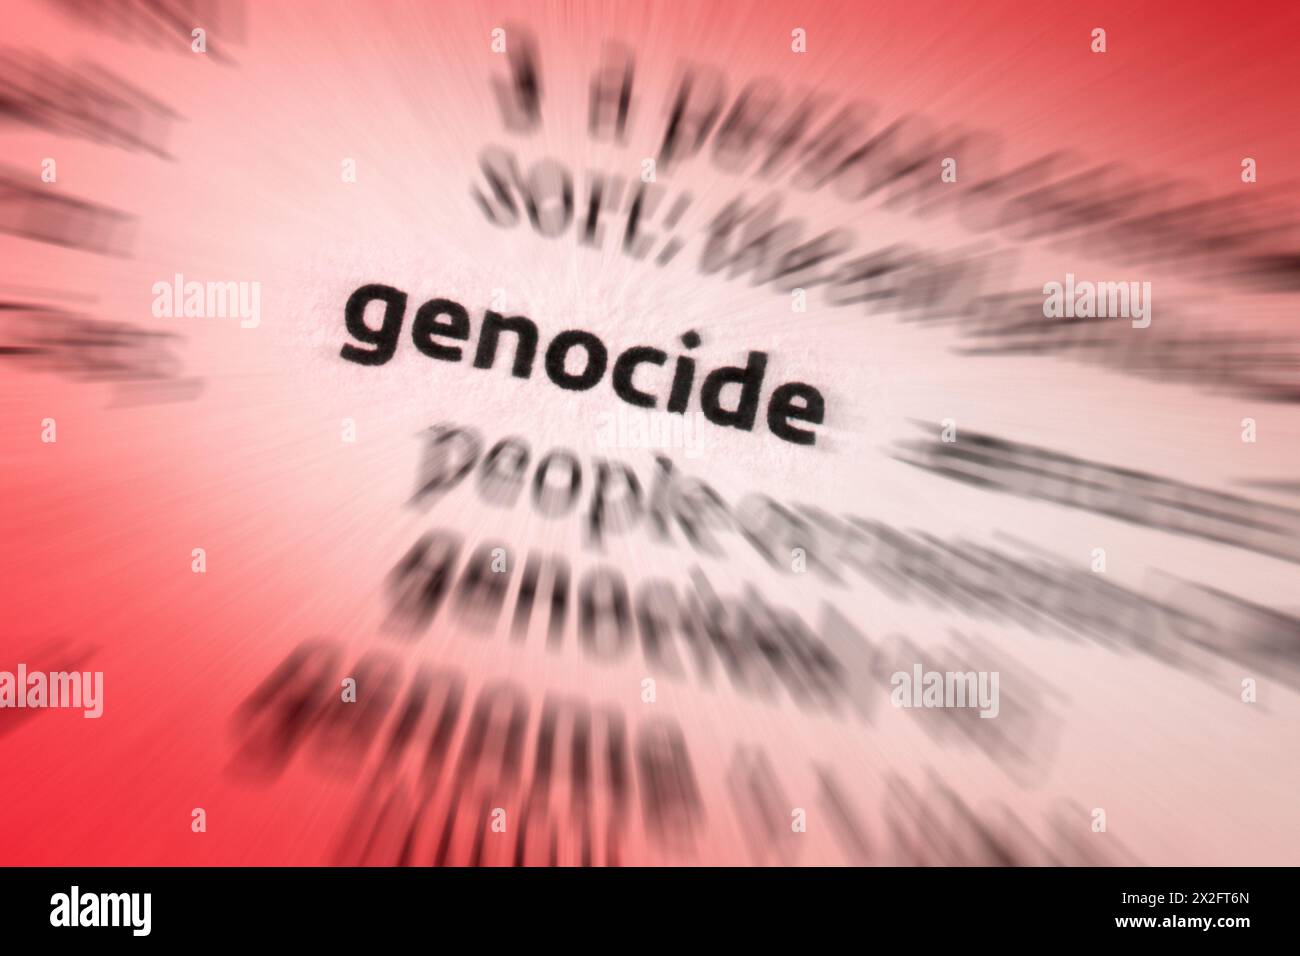 Il genocidio è la distruzione deliberata e sistematica, in tutto o in parte, di un gruppo o comunità etnico, razziale, religioso o nazionale. Foto Stock